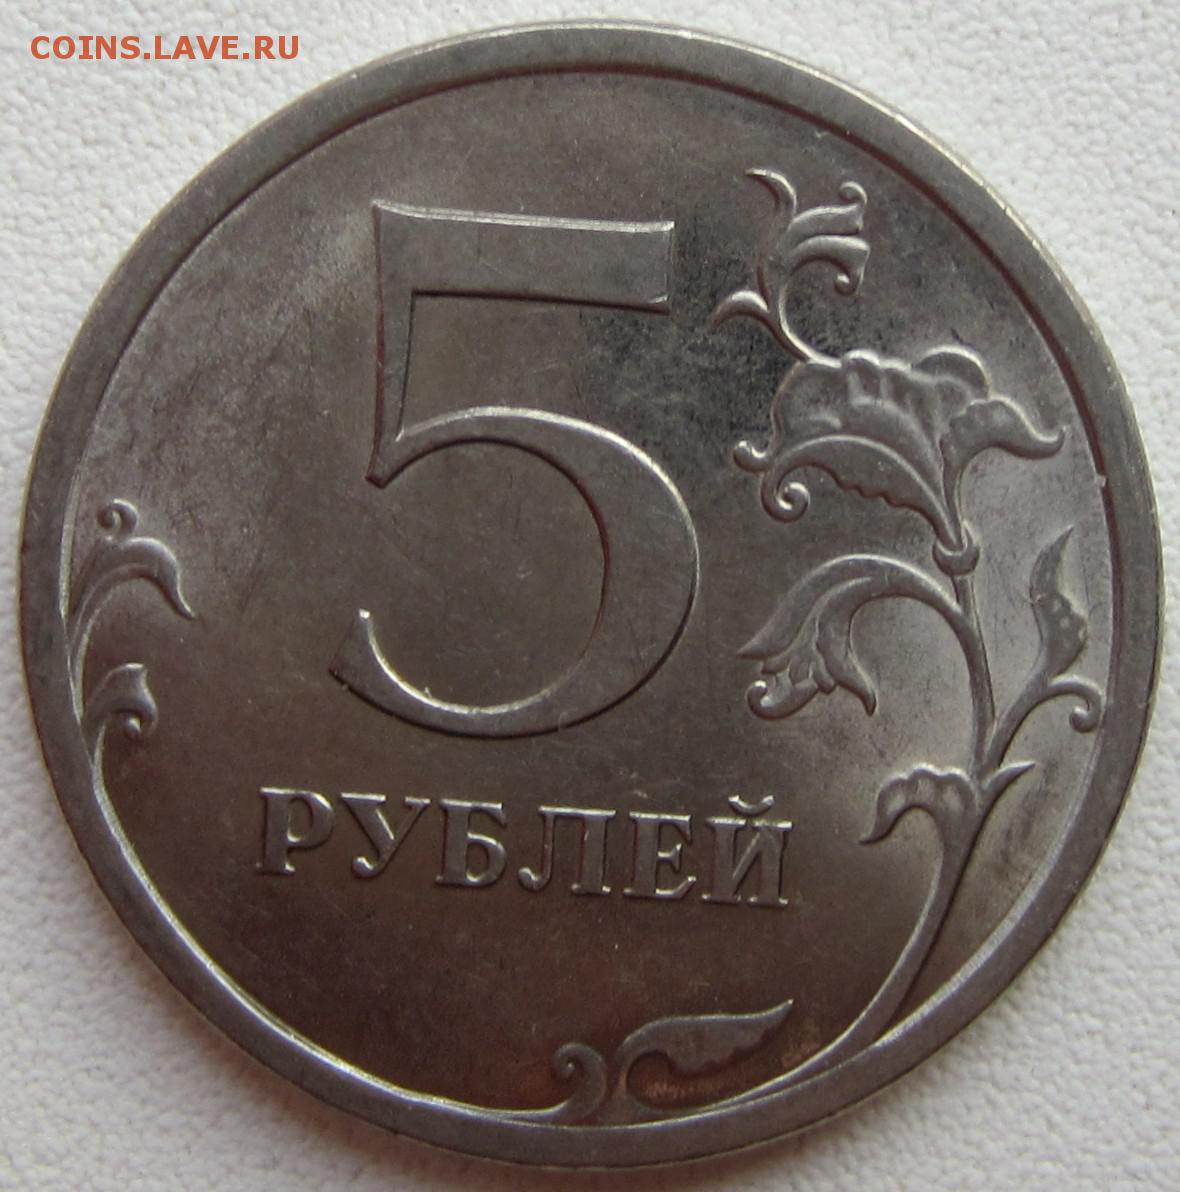 37 5 рублей. 5 Рублей 2018. Монеты из магнита.